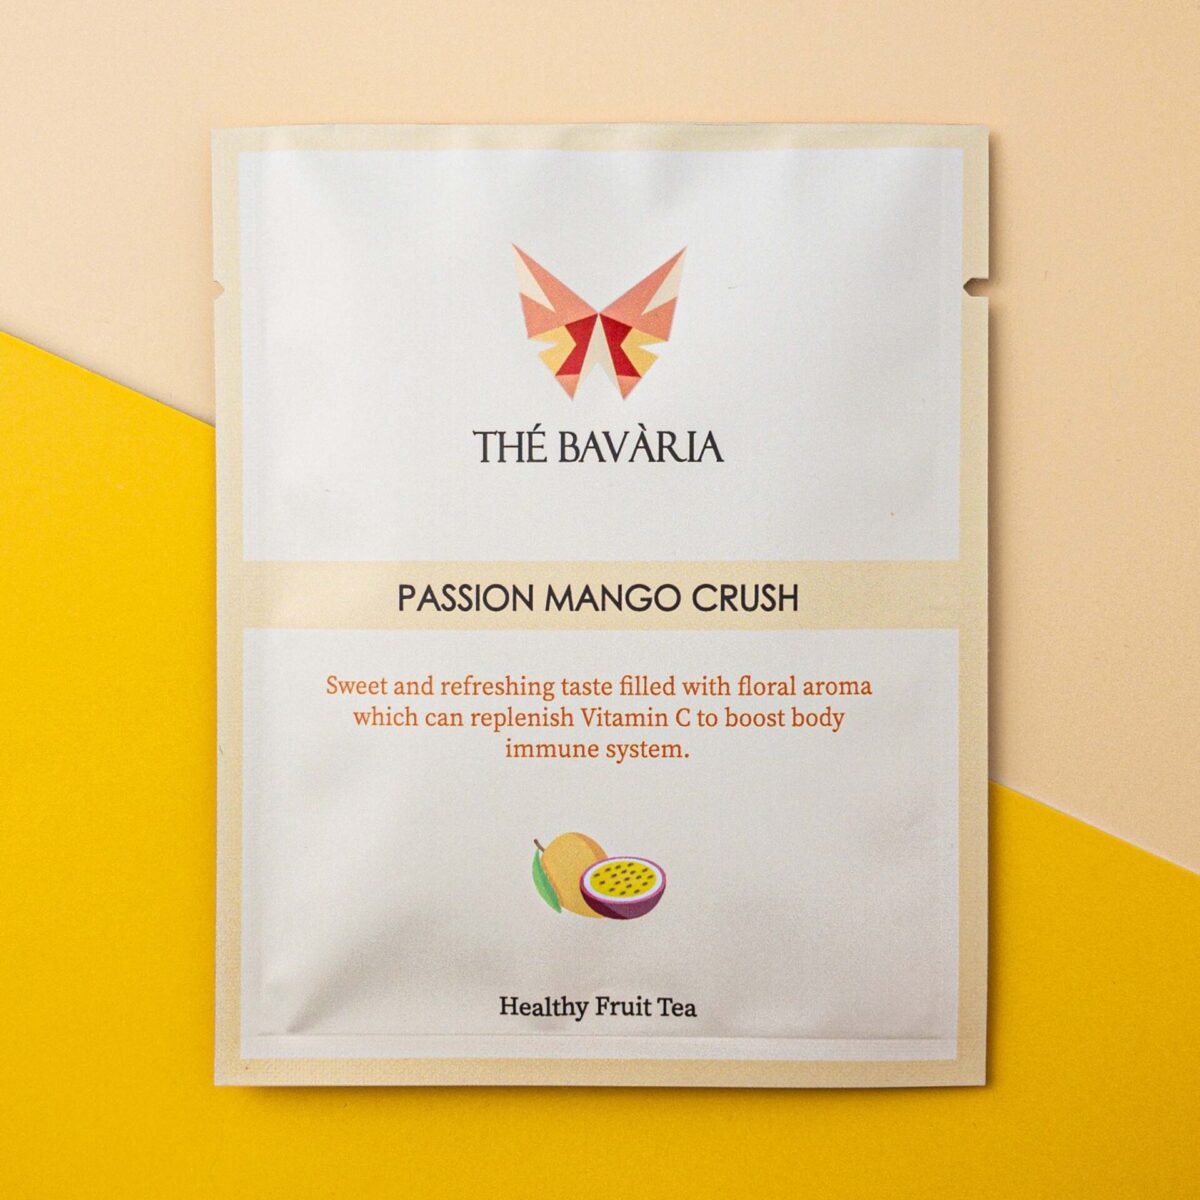 Passion Mango Crush Product Image